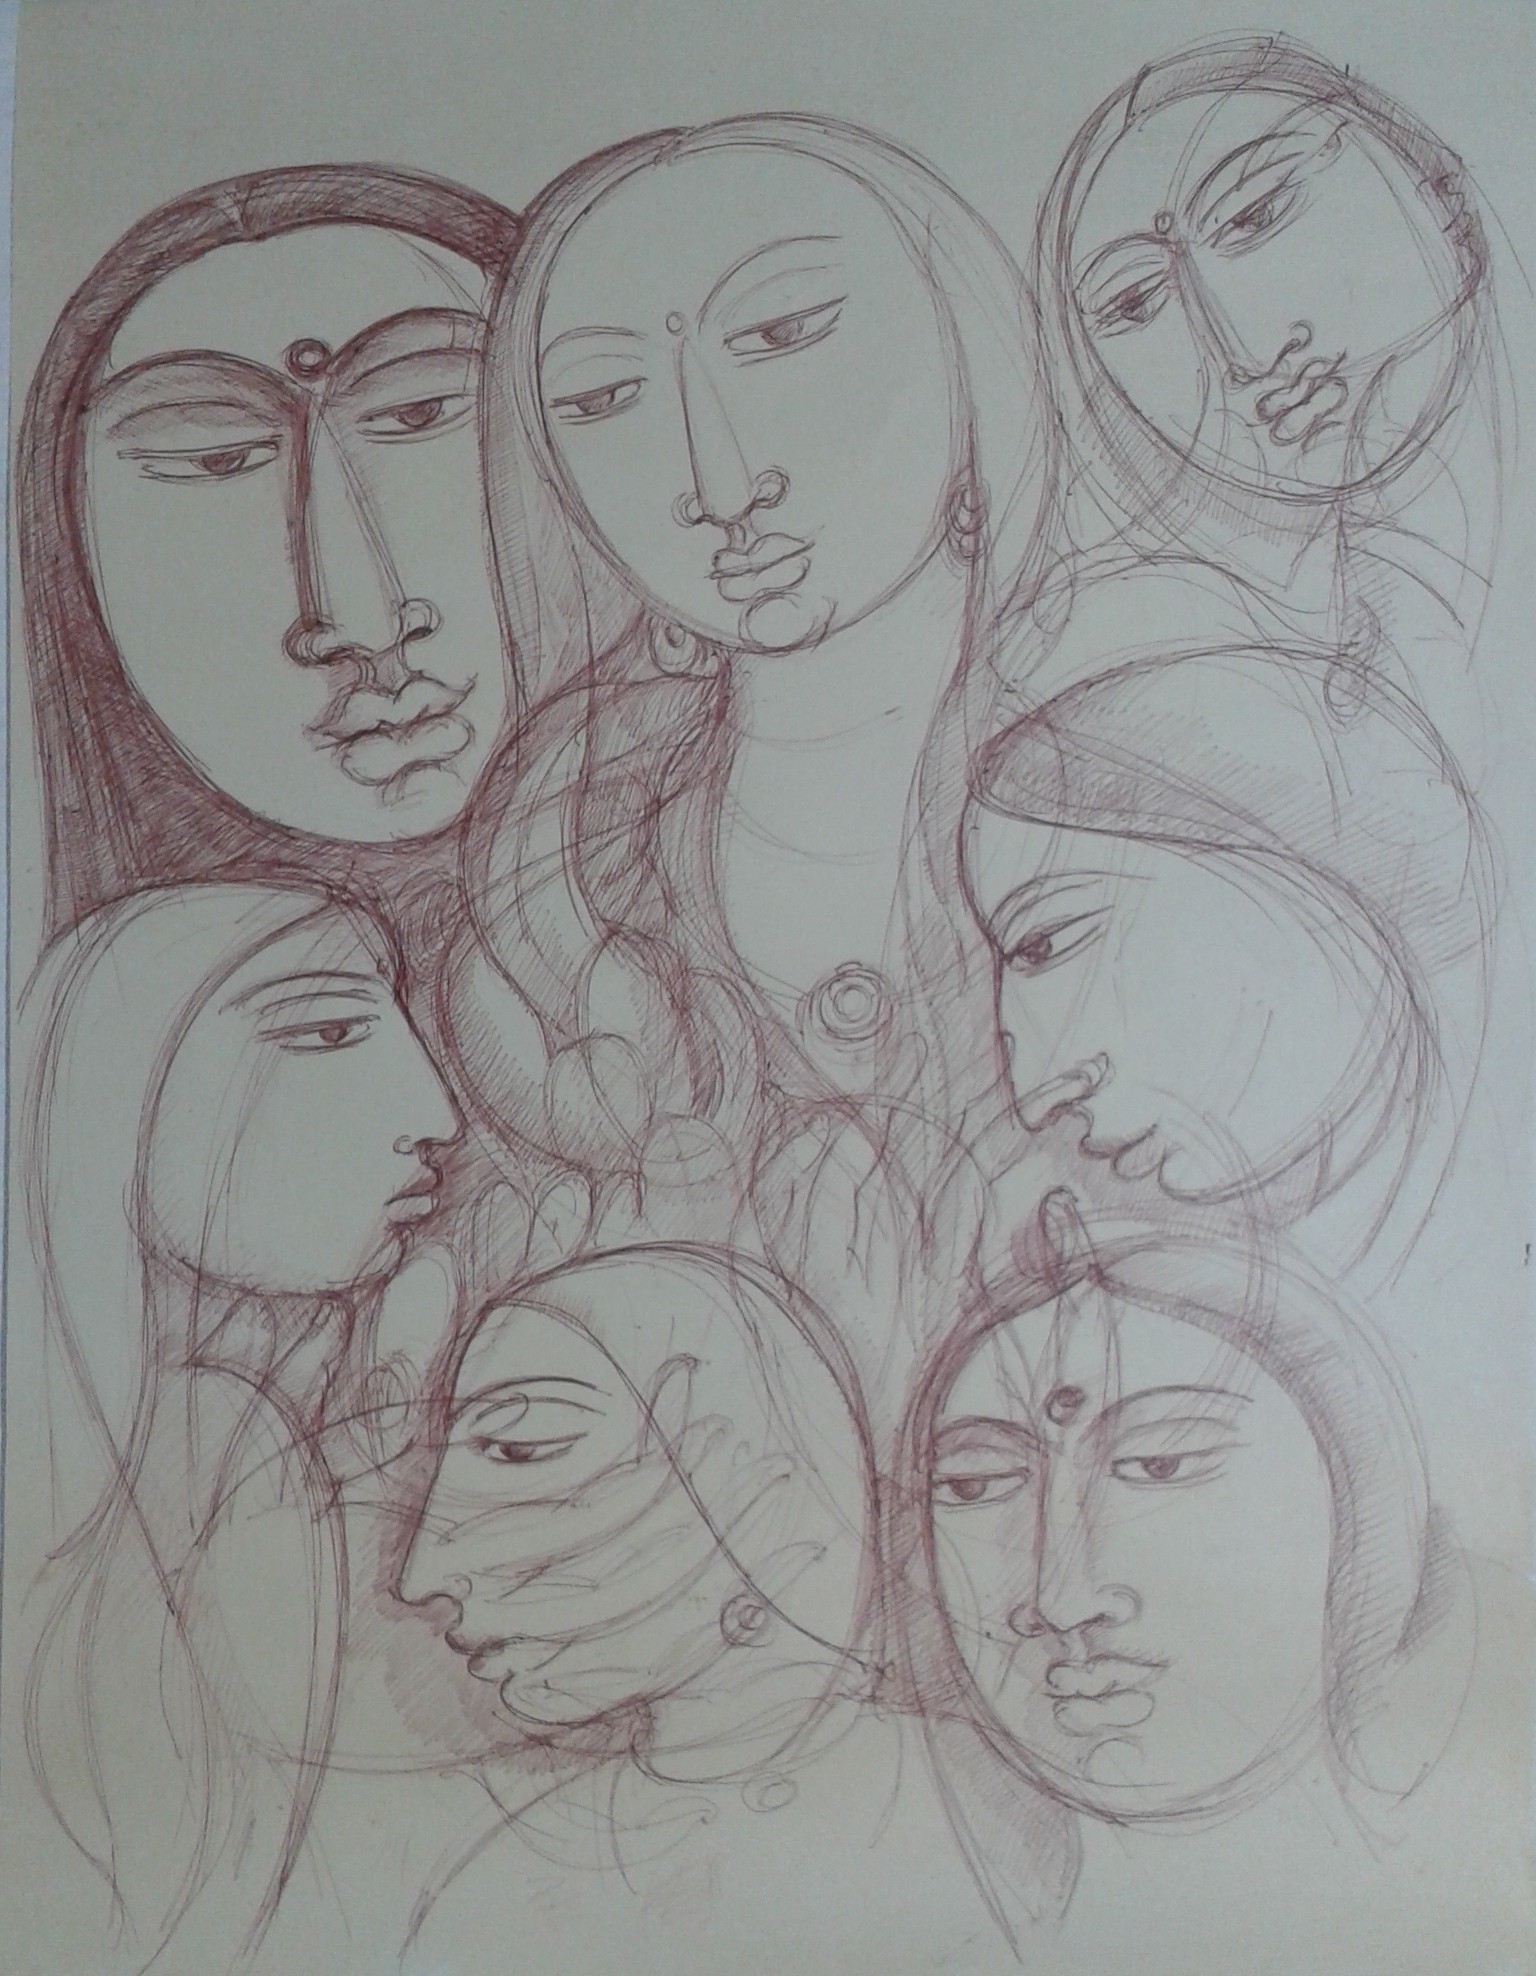 Reflection by Wasantha Namaskara